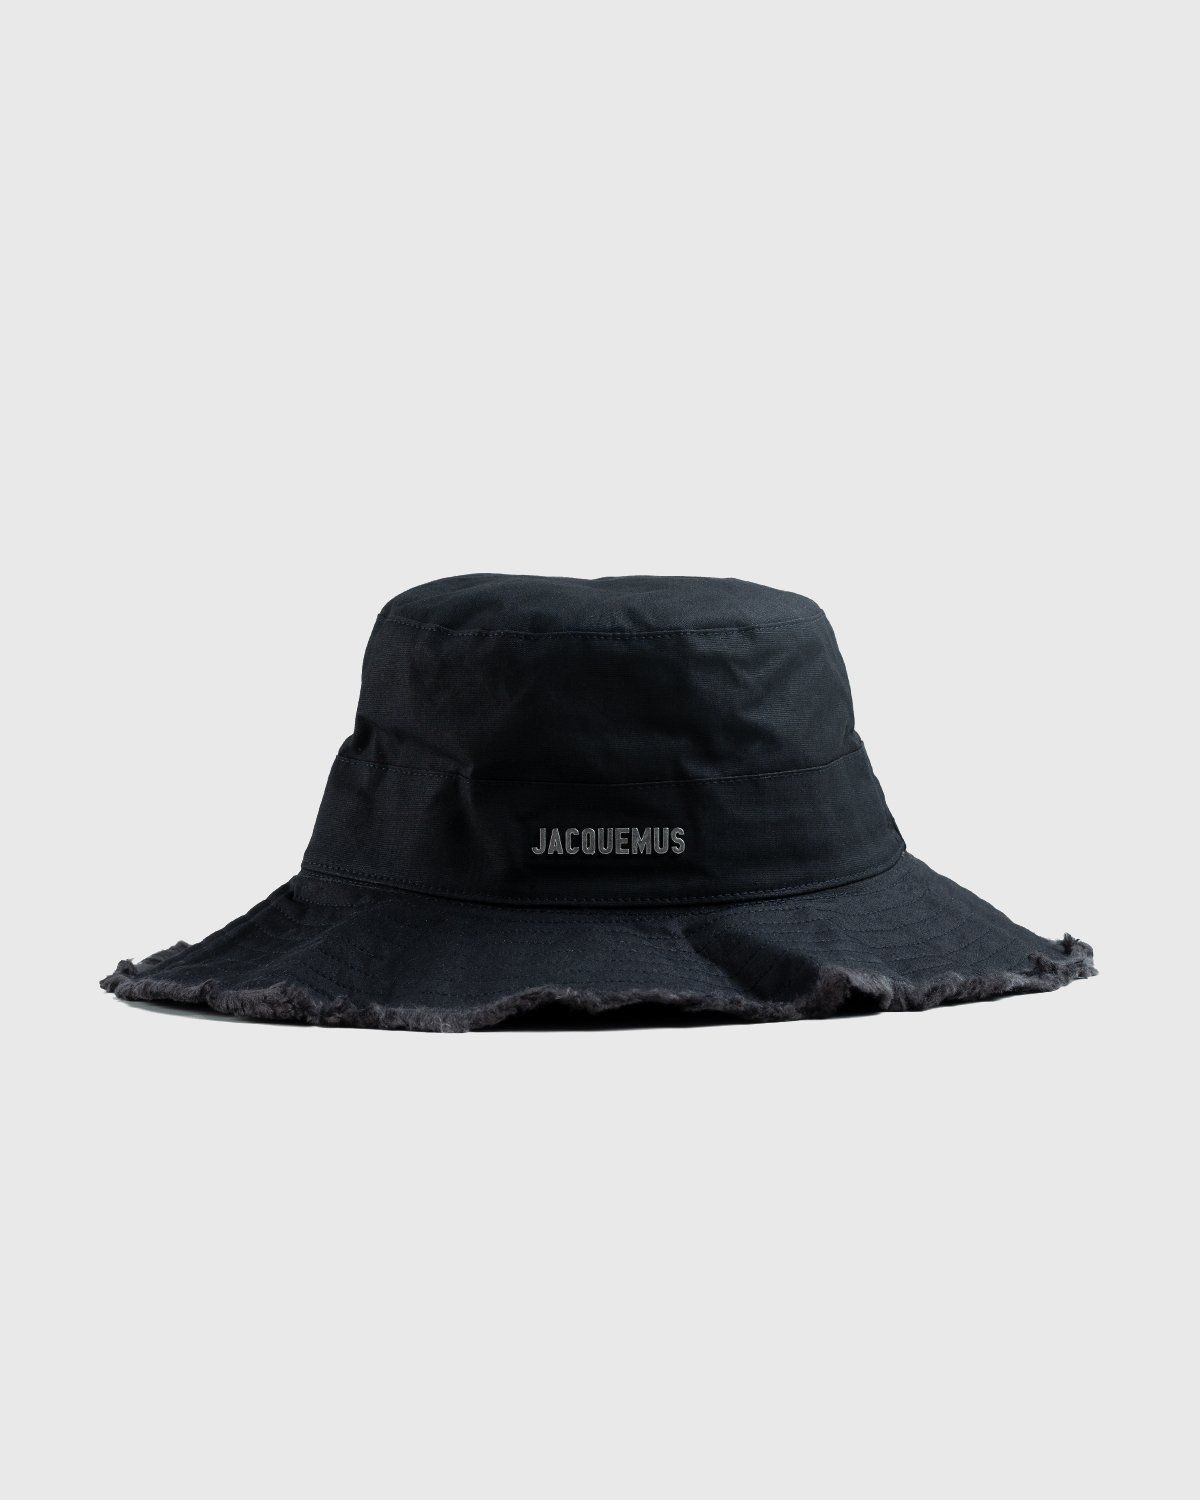 JACQUEMUS – Le Bob Artichaut Black - Bucket Hats - Black - Image 1